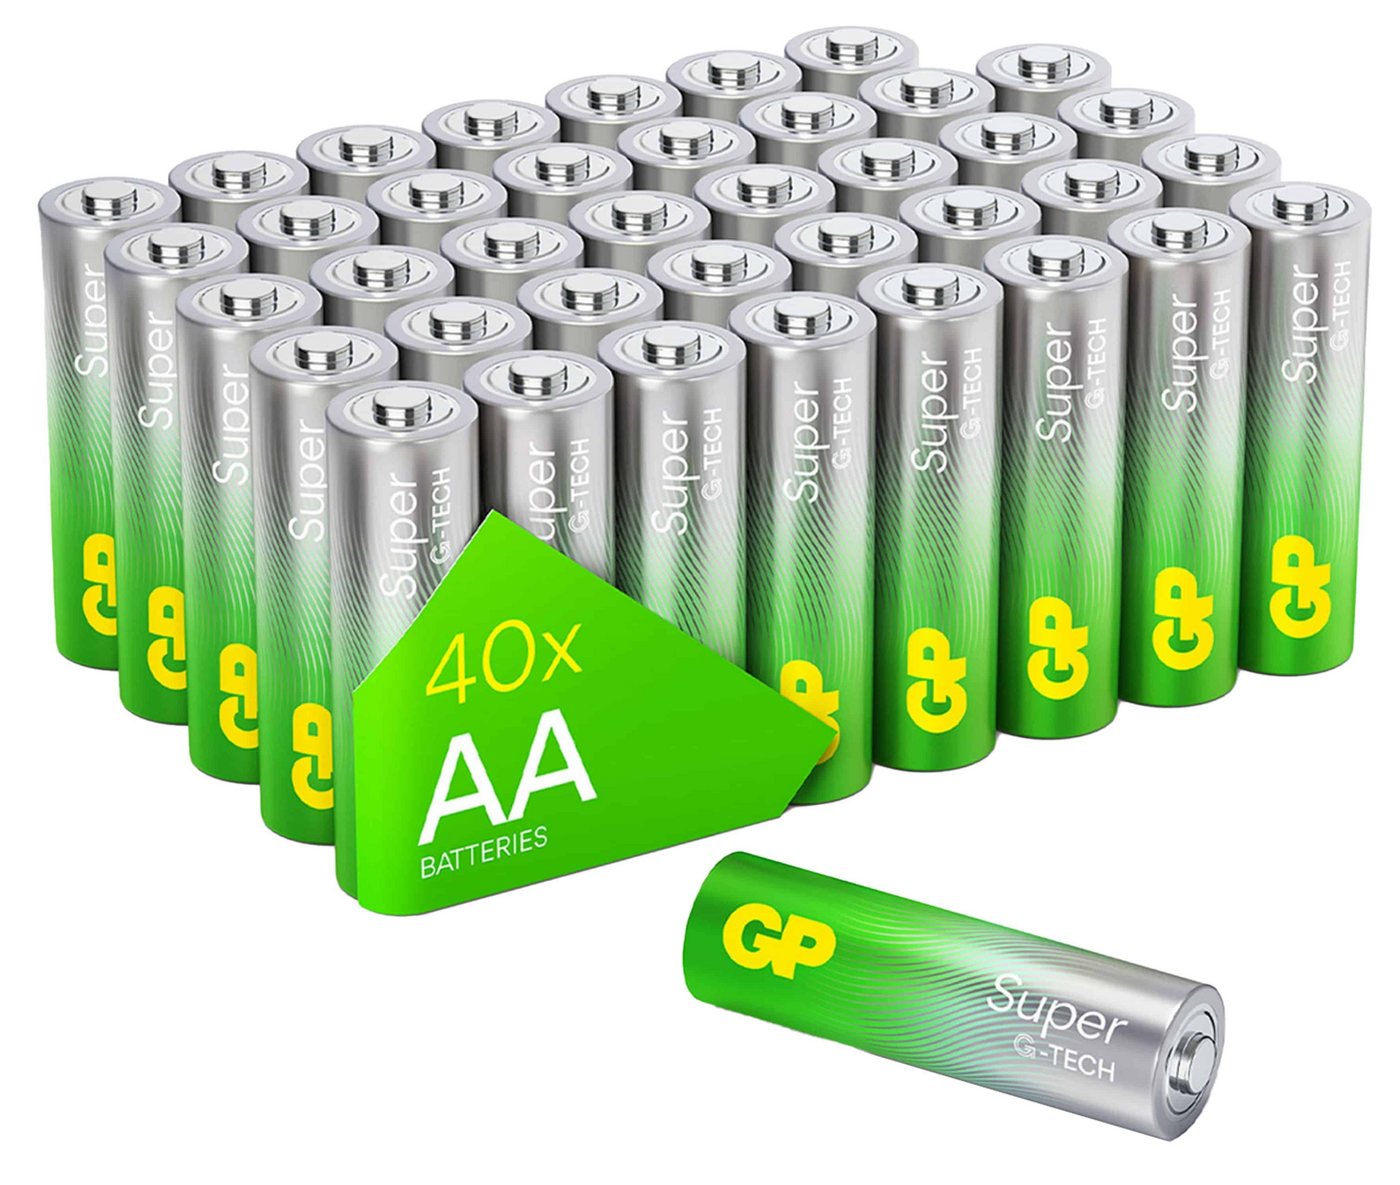 Gp GP Mignon-Batterie SUPER Alkaline, AA LR06, 40 Batterie von Gp